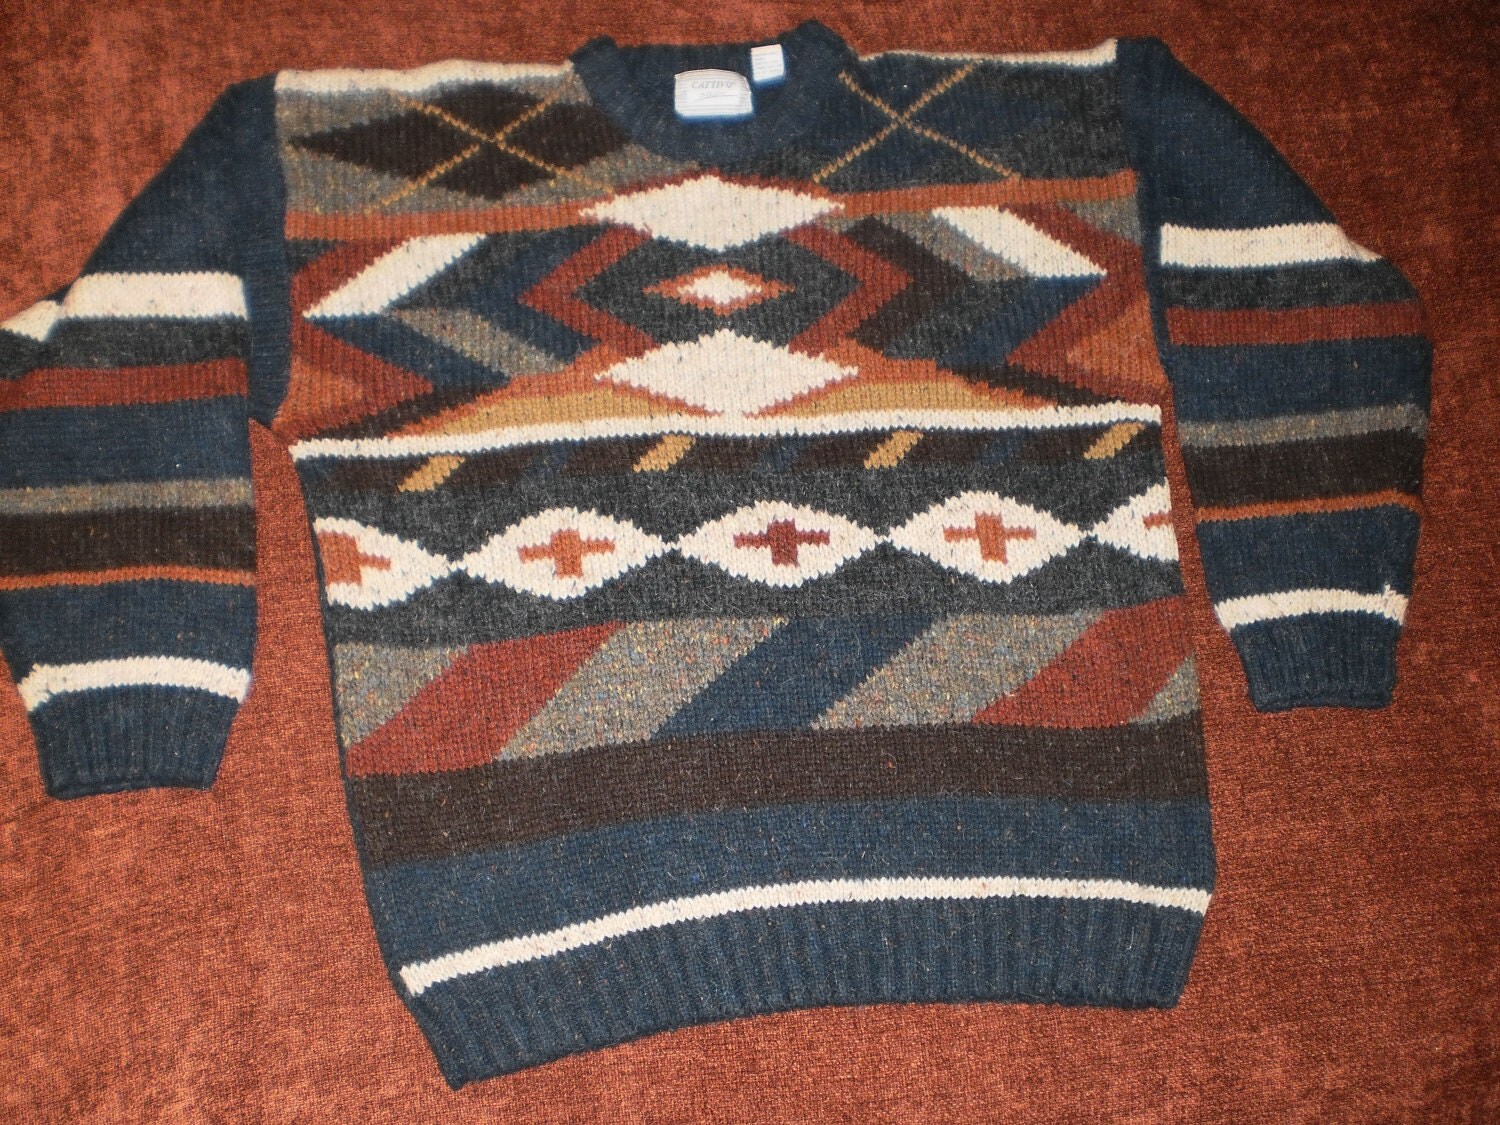 Vintage Men's Tribal Print Sweater by VendageTresors on Etsy